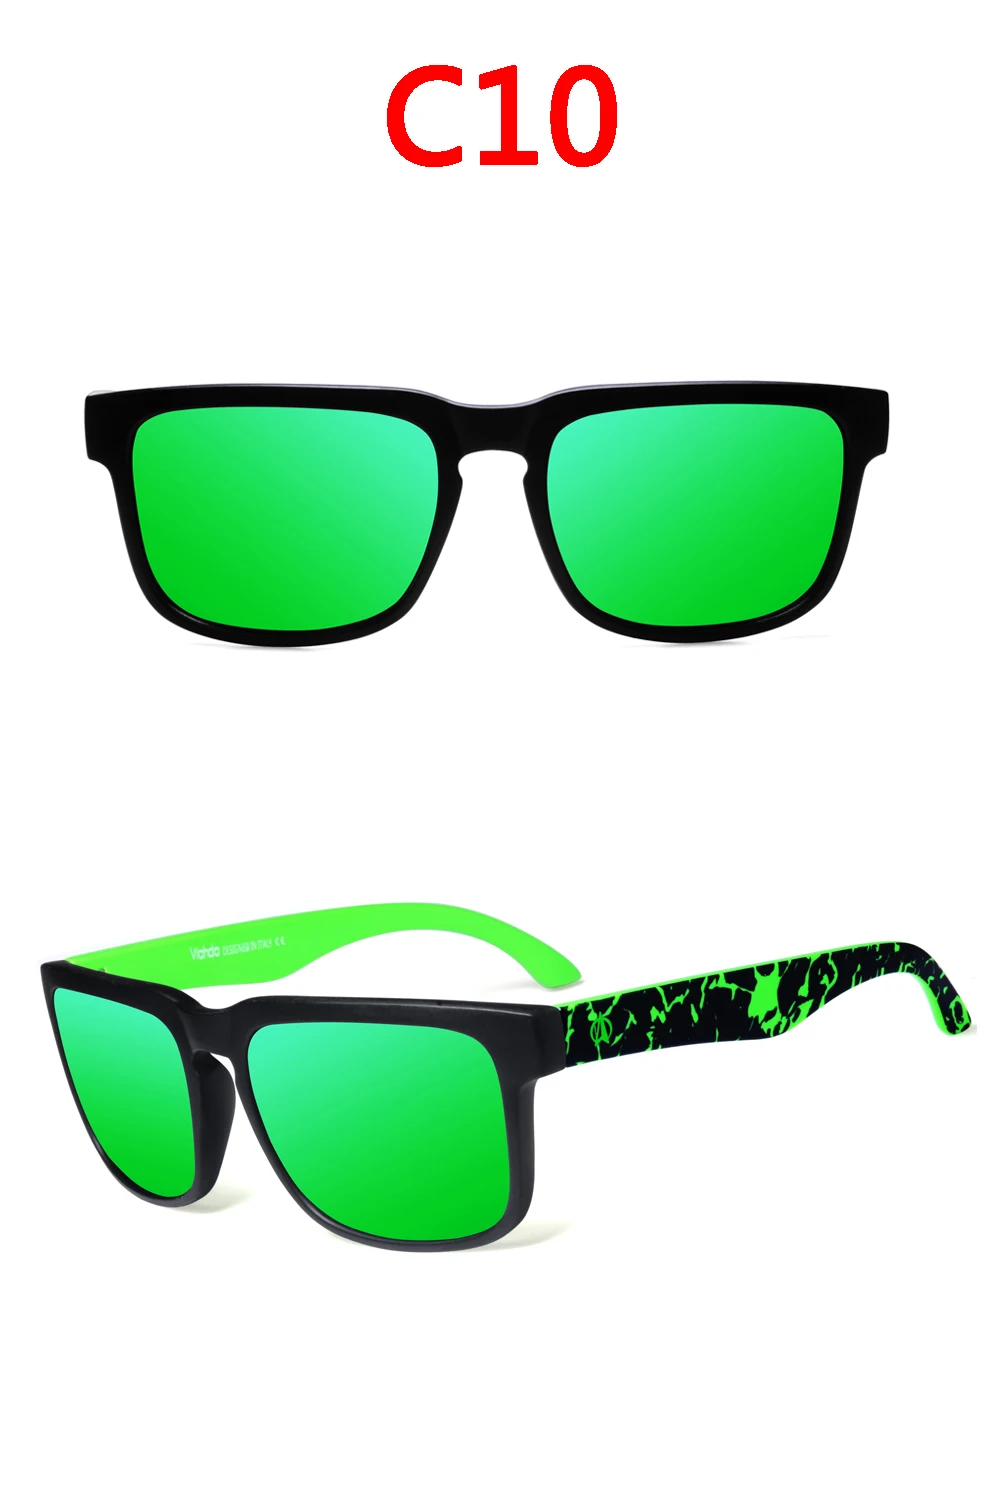 VIAHDA новые и крутые поляризованные солнцезащитные очки модели цветных солнцезащитных очков брендовые дизайнерские солнцезащитные очки с коробкой